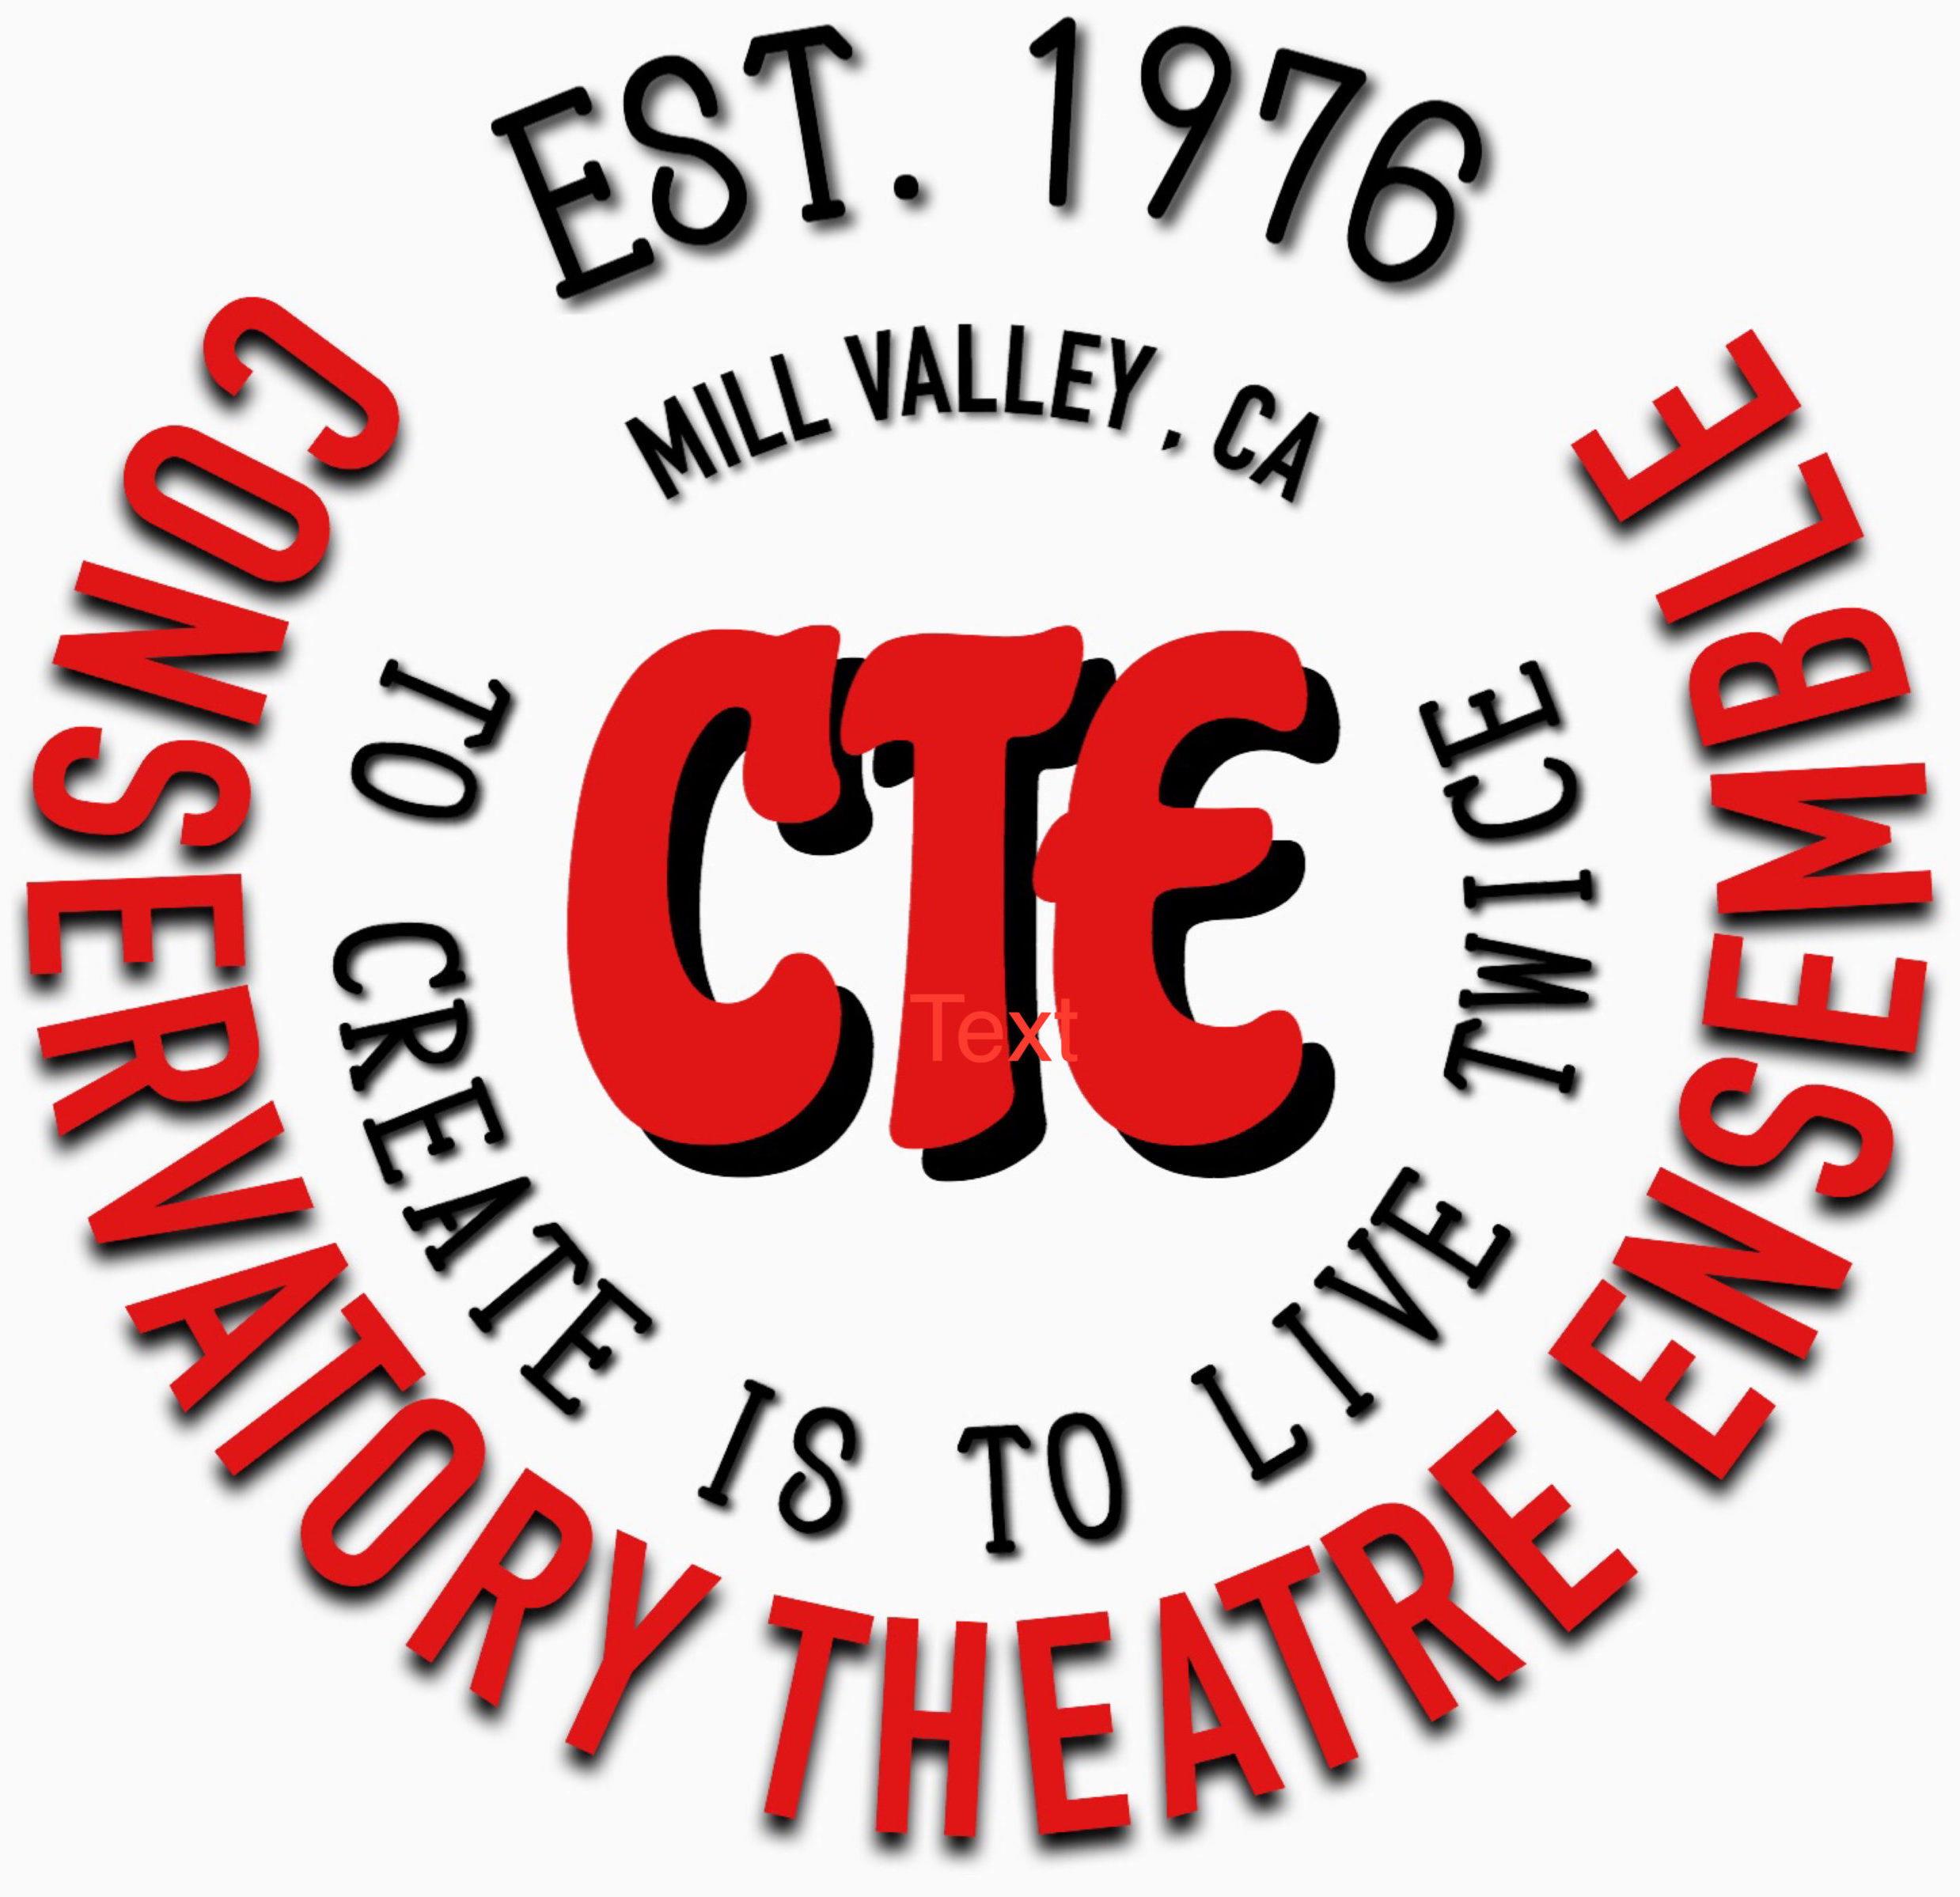 Conservatory Theatre Ensemble